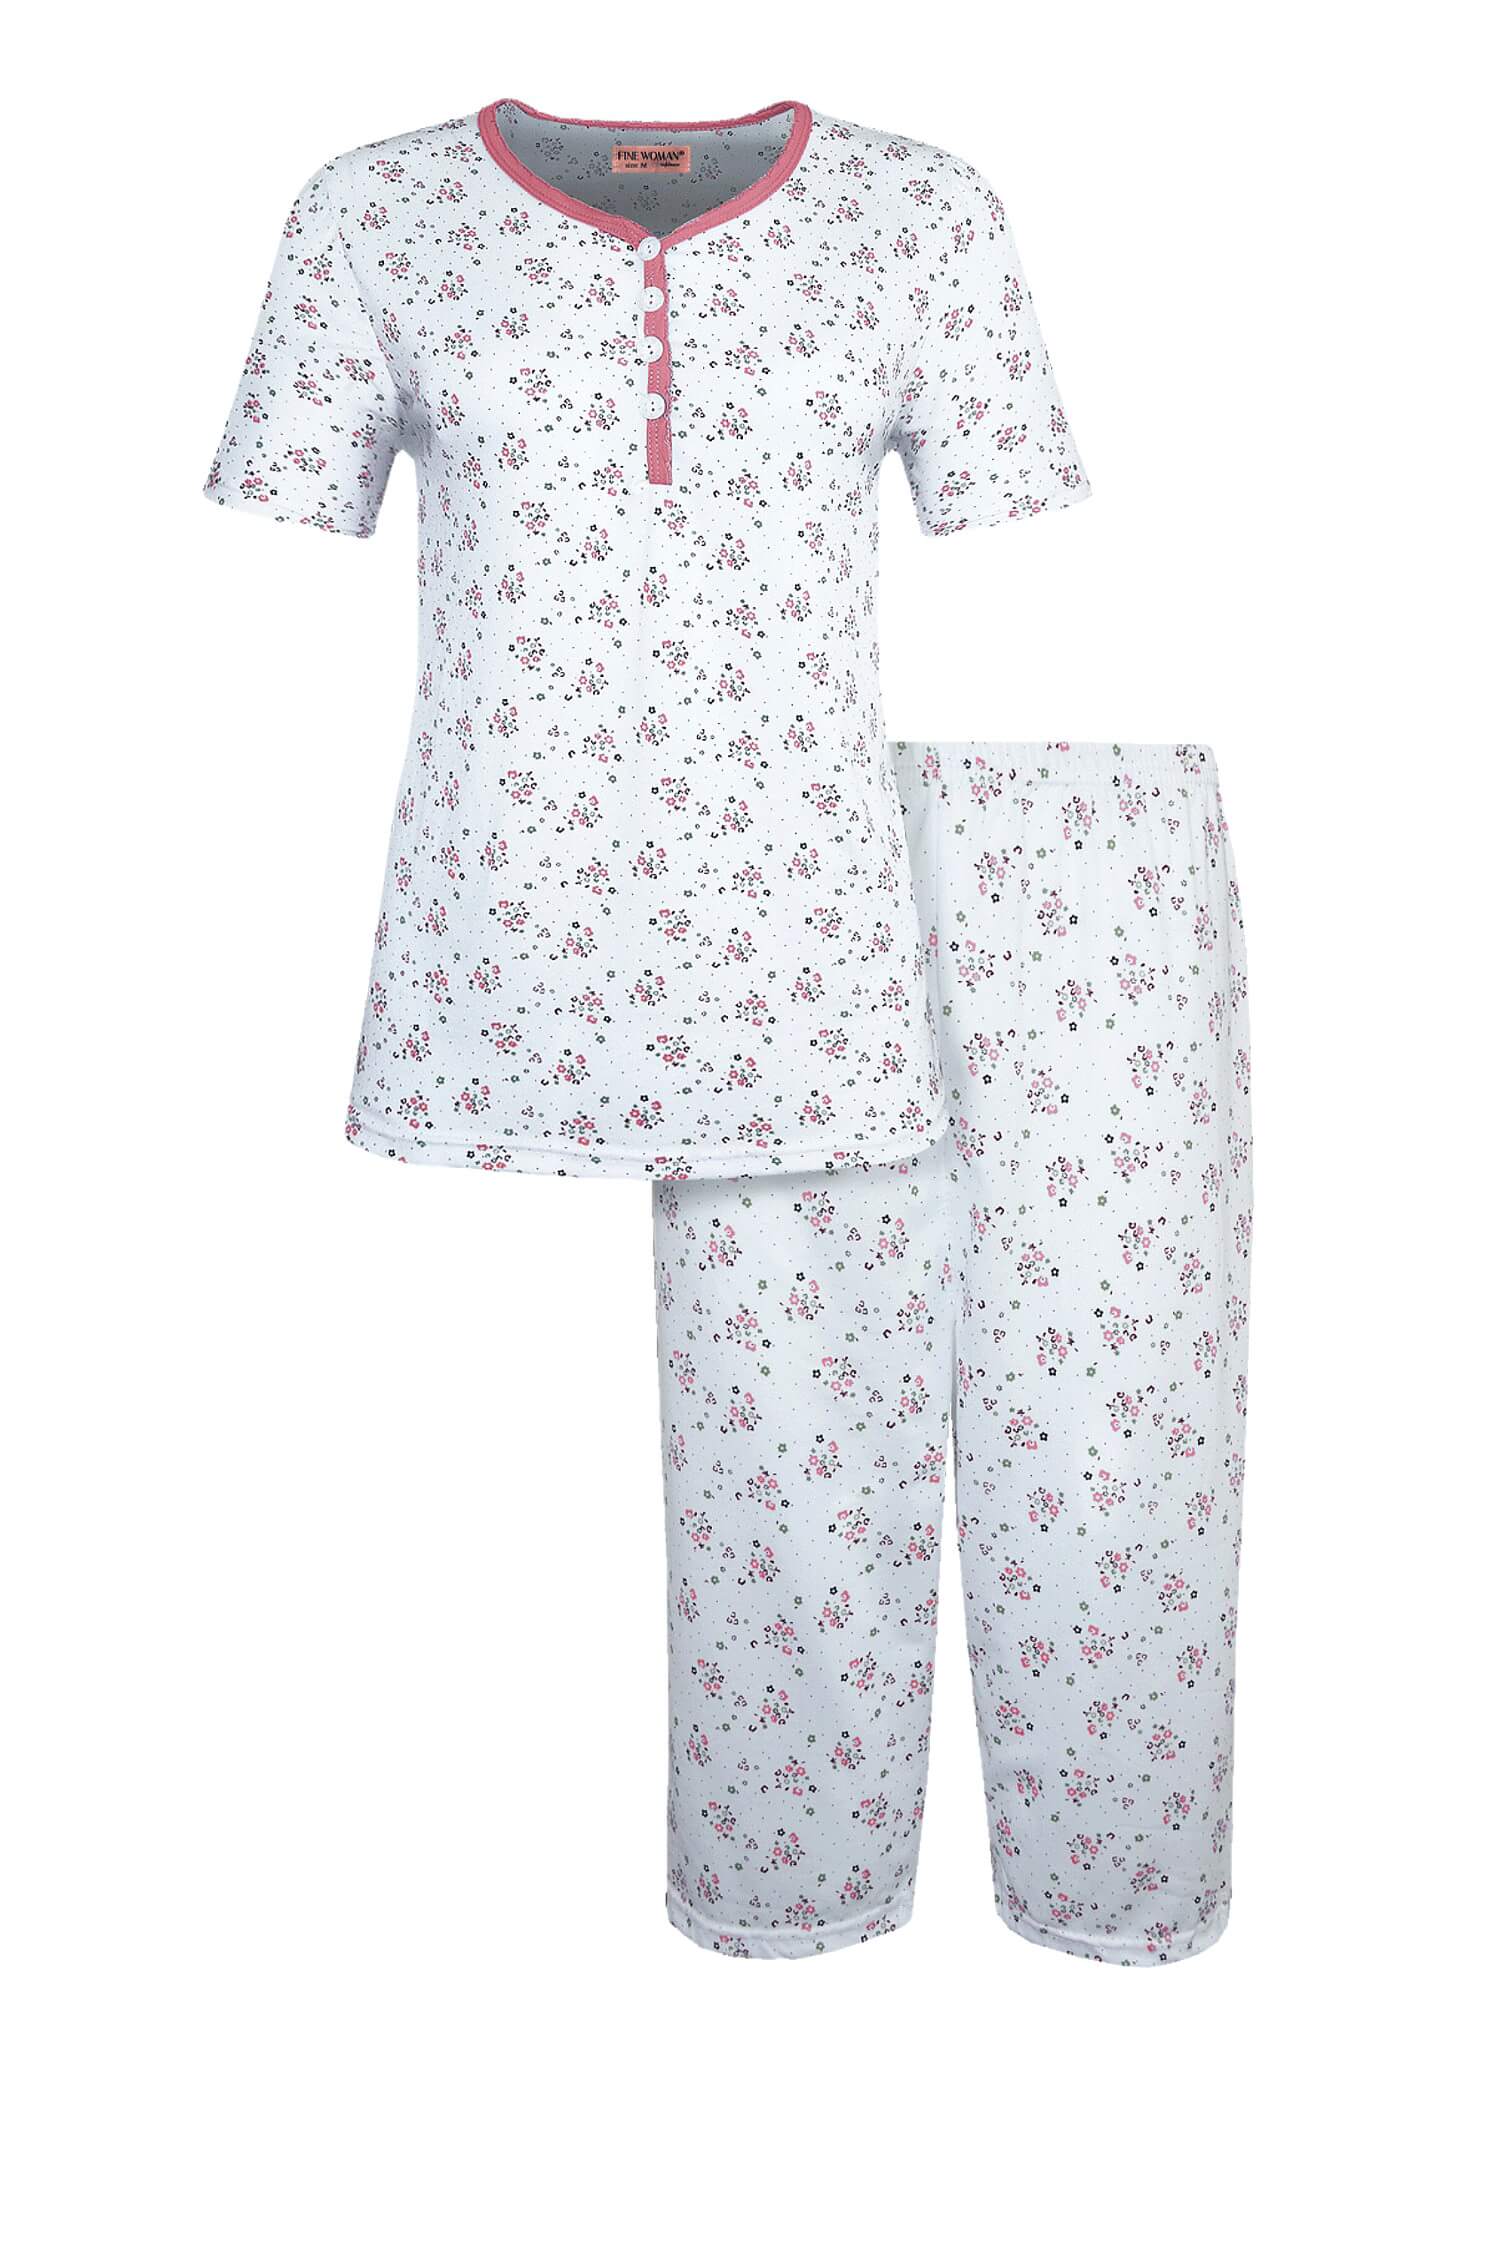 Bohdanka dámské capri pyžamo krátký rukáv 2295 XL světle hnědá